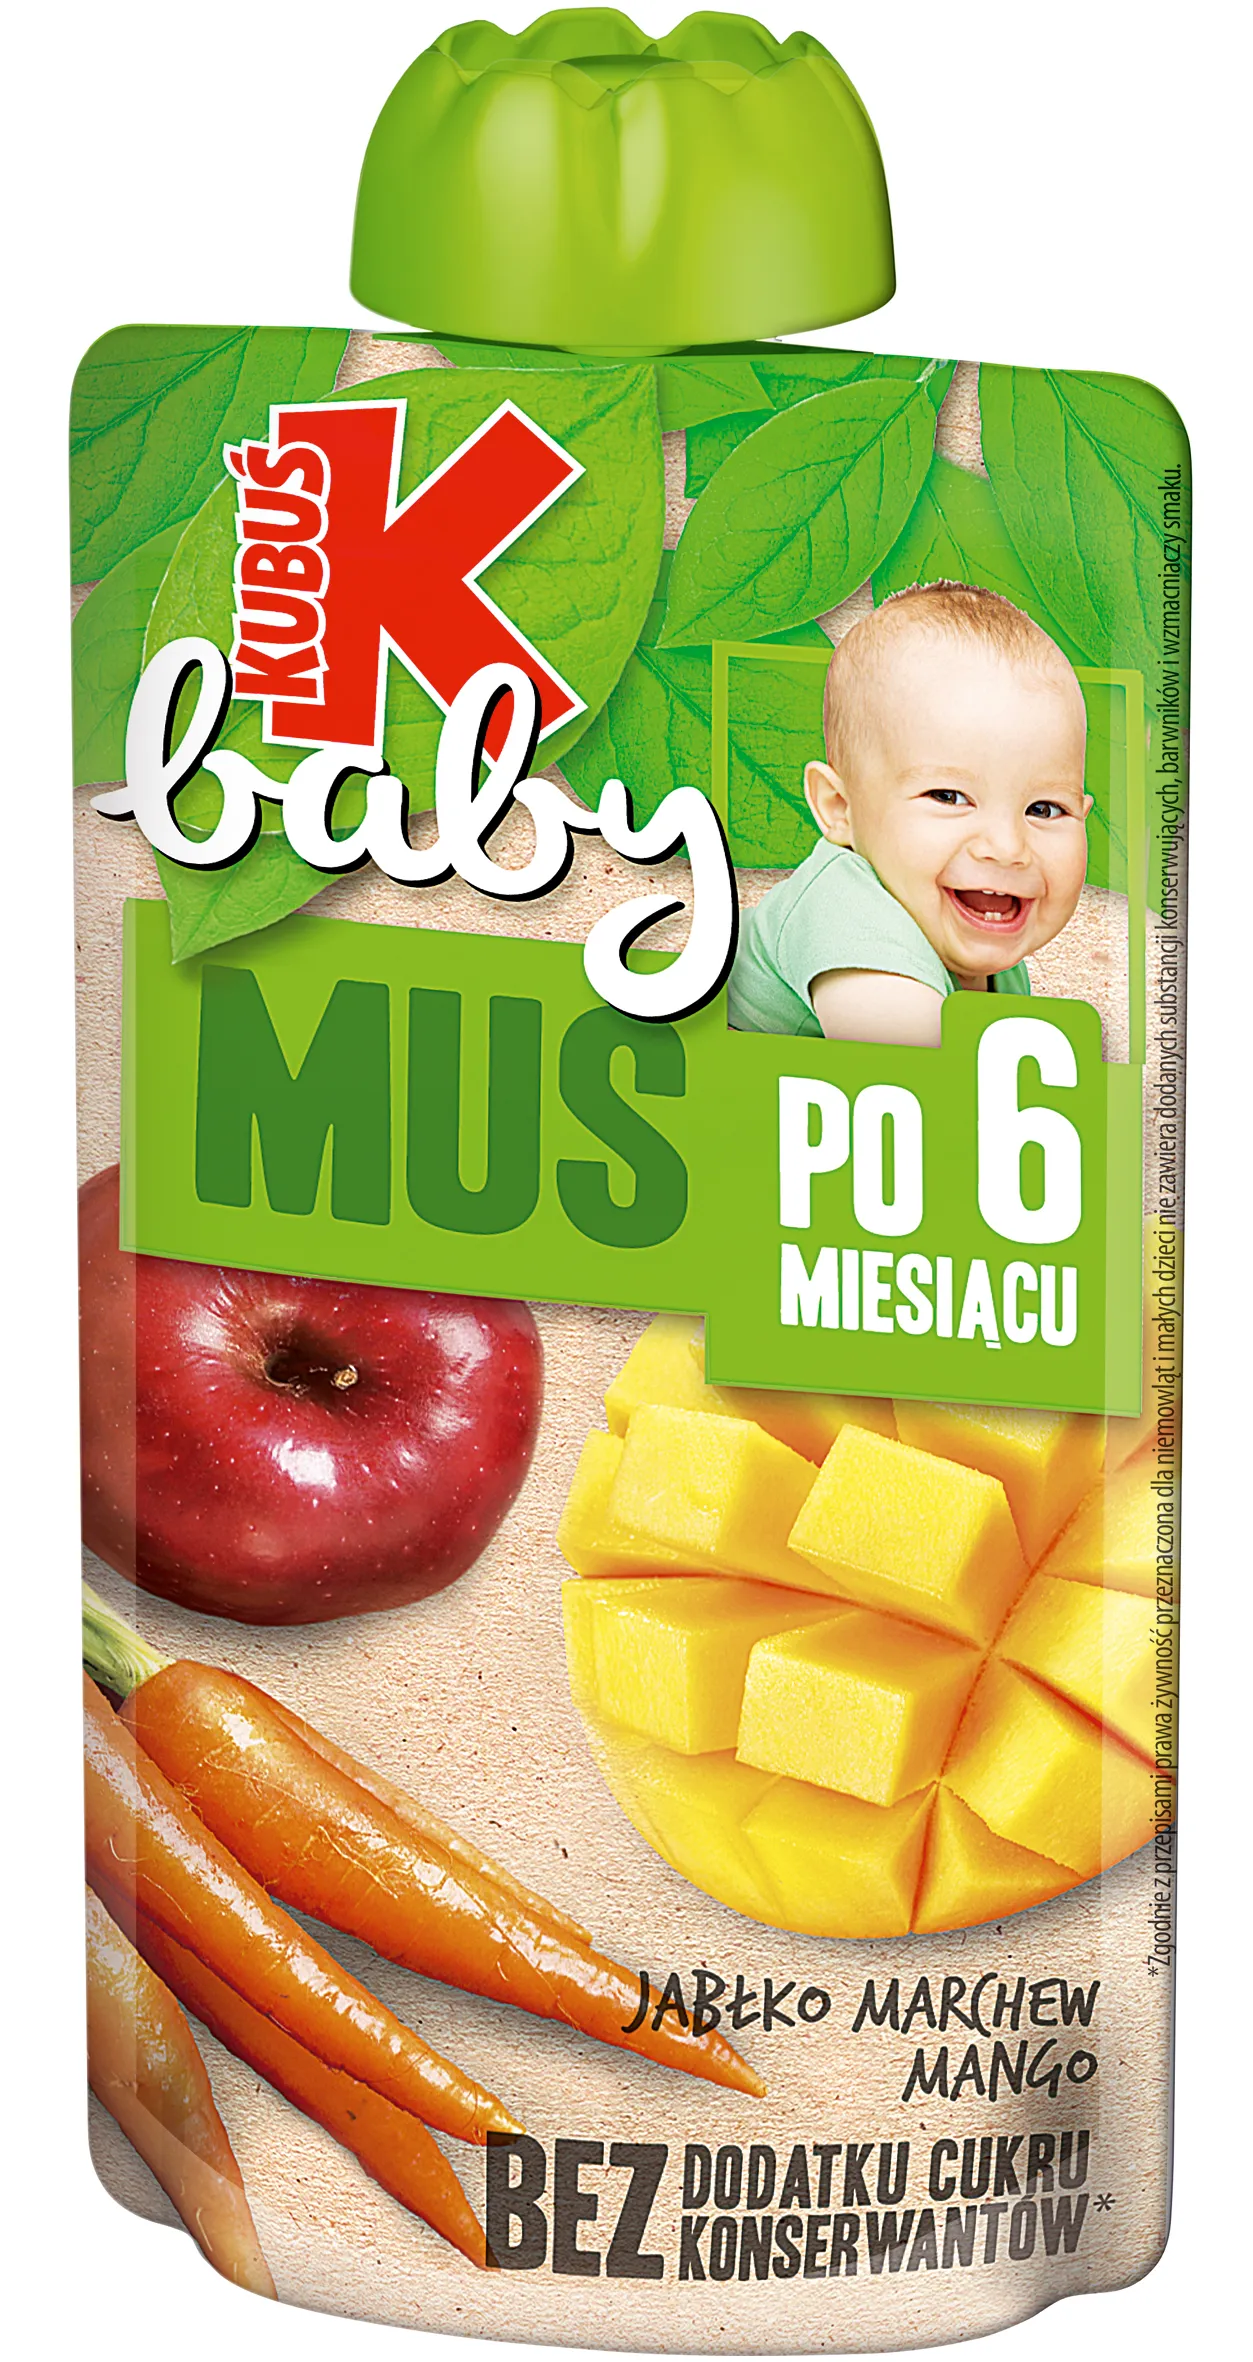 Kubuś Baby Mus po 6 miesiącu, jabłko marchew mango, 100 g